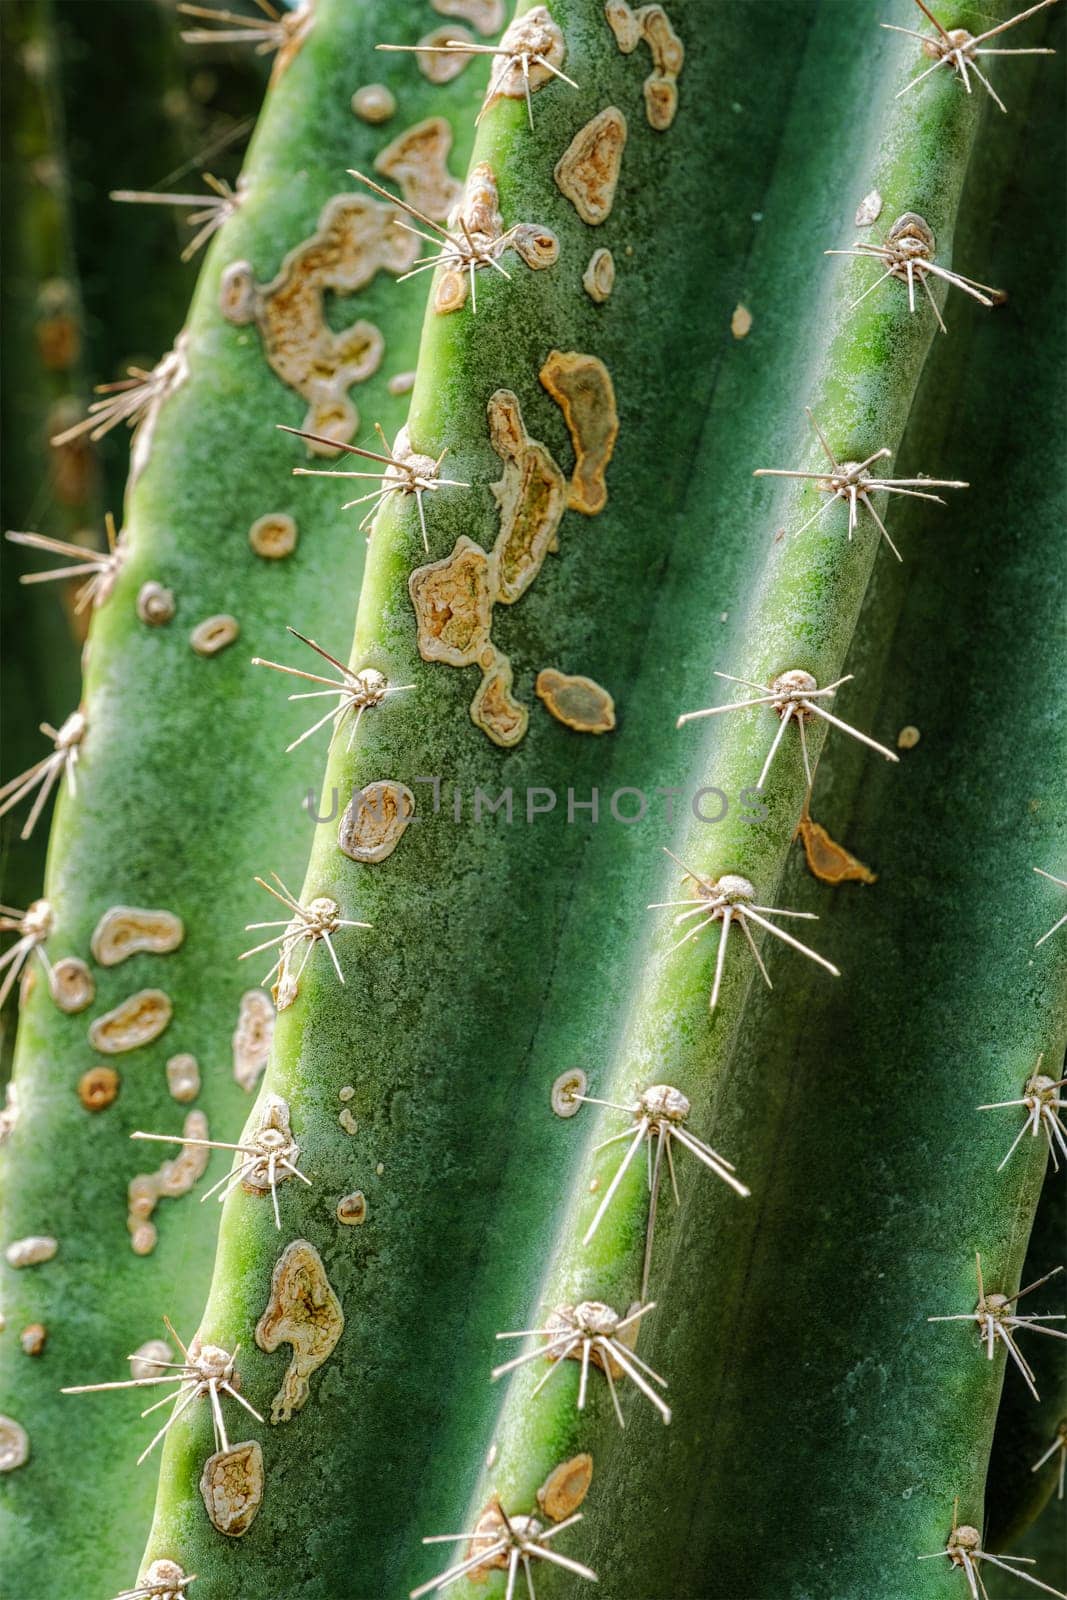 Cereus hildmannianus aka Queen of the night cactus close up texture